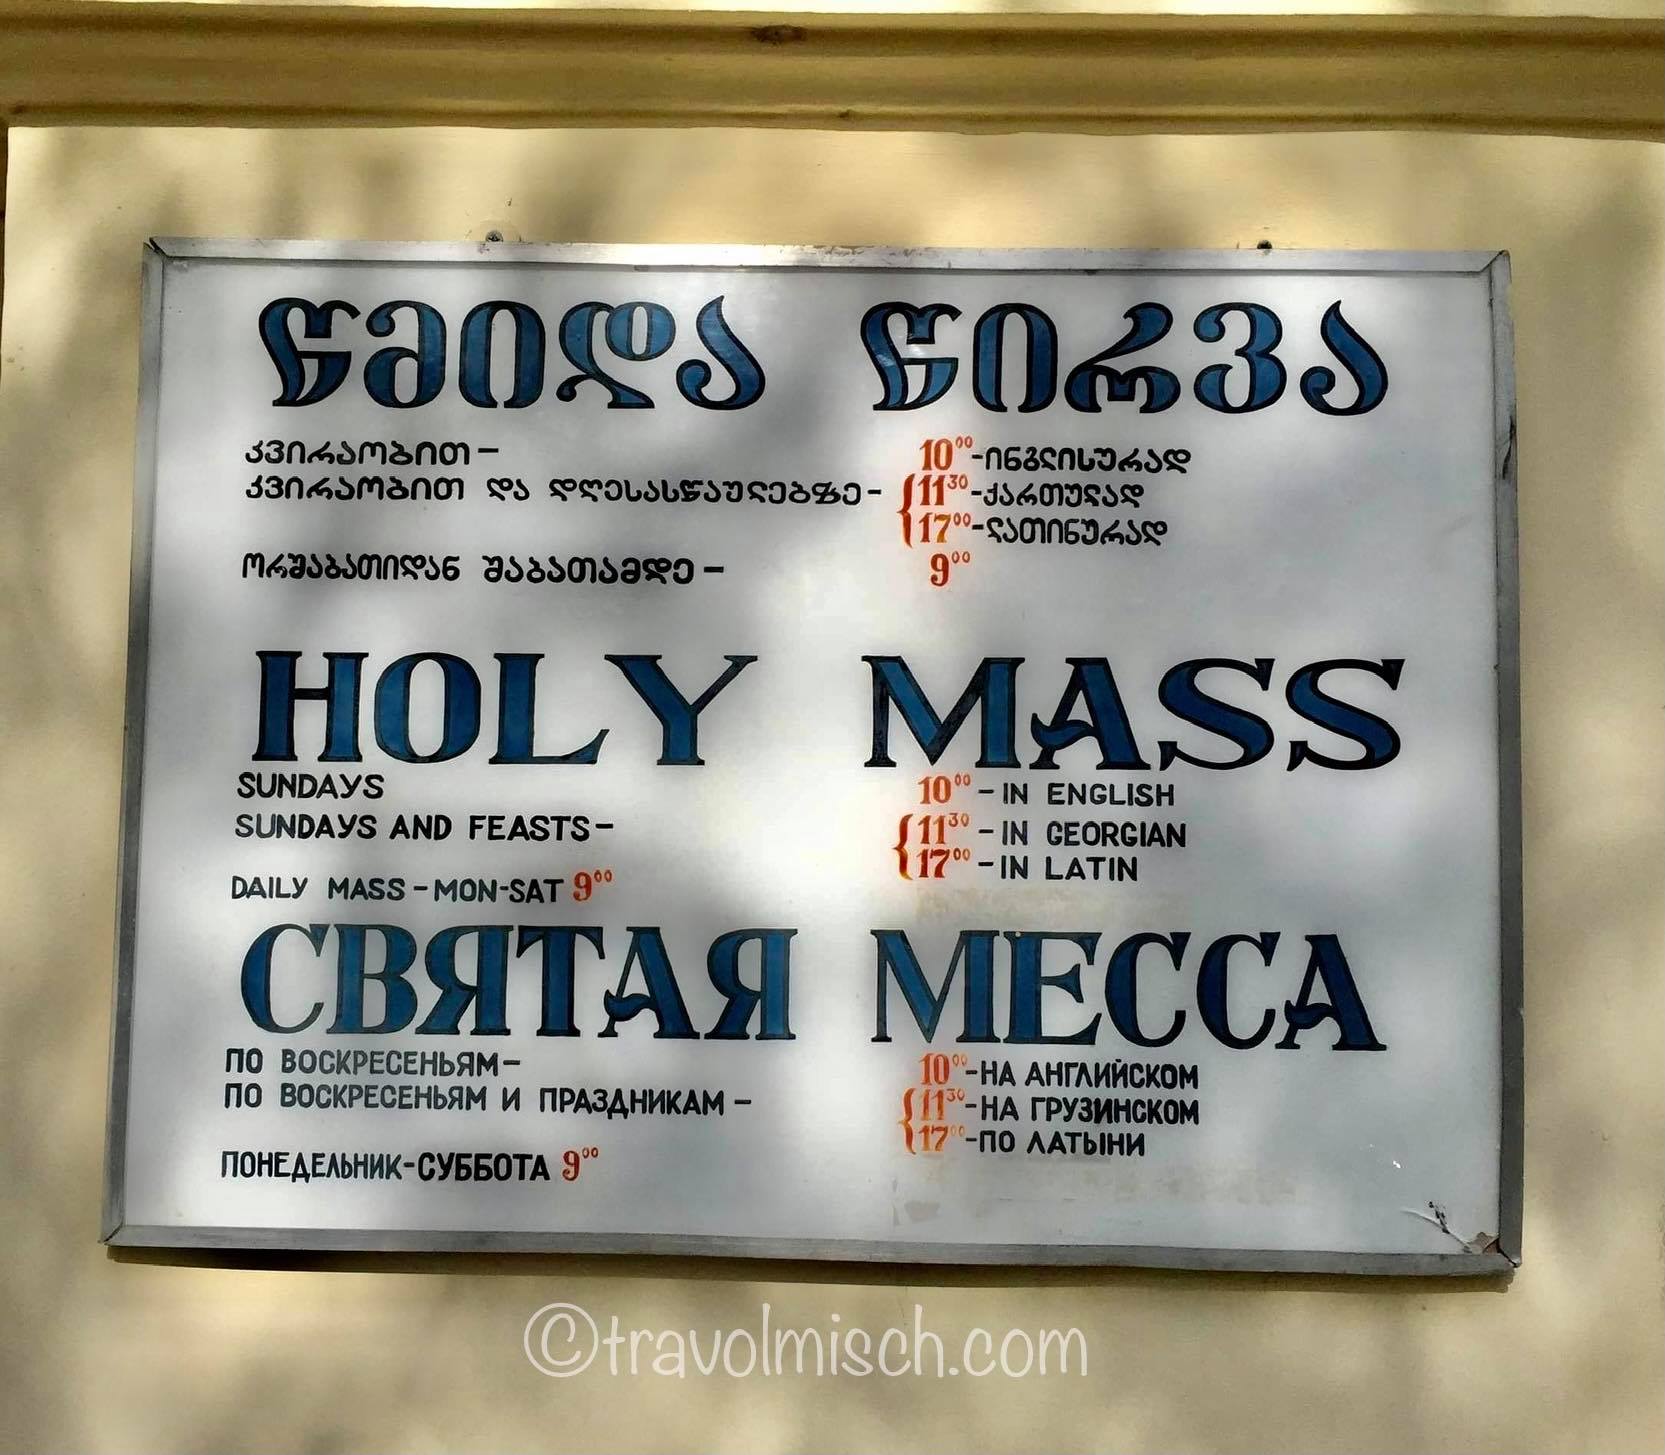 Church mass schedules